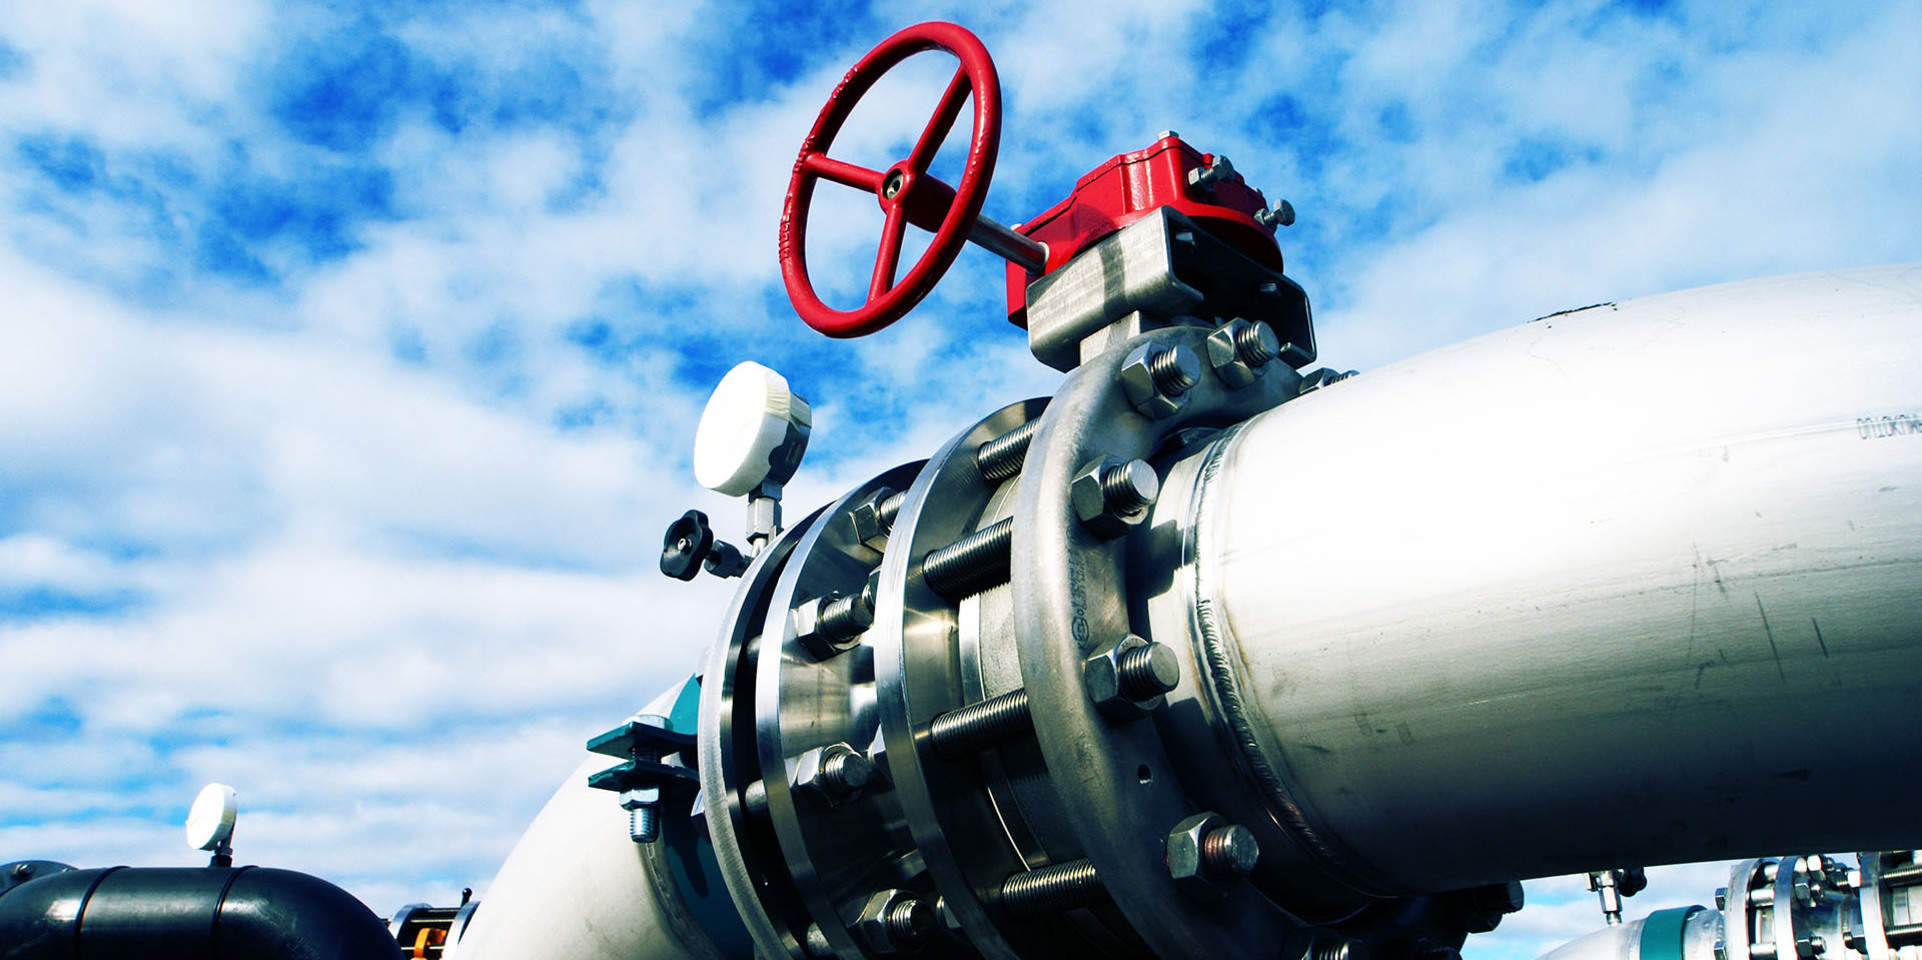 Украина наносит мощный удар по РФ: ГТС и "Нафтогаз" готовятся закупать газ только в Катаре - подробности